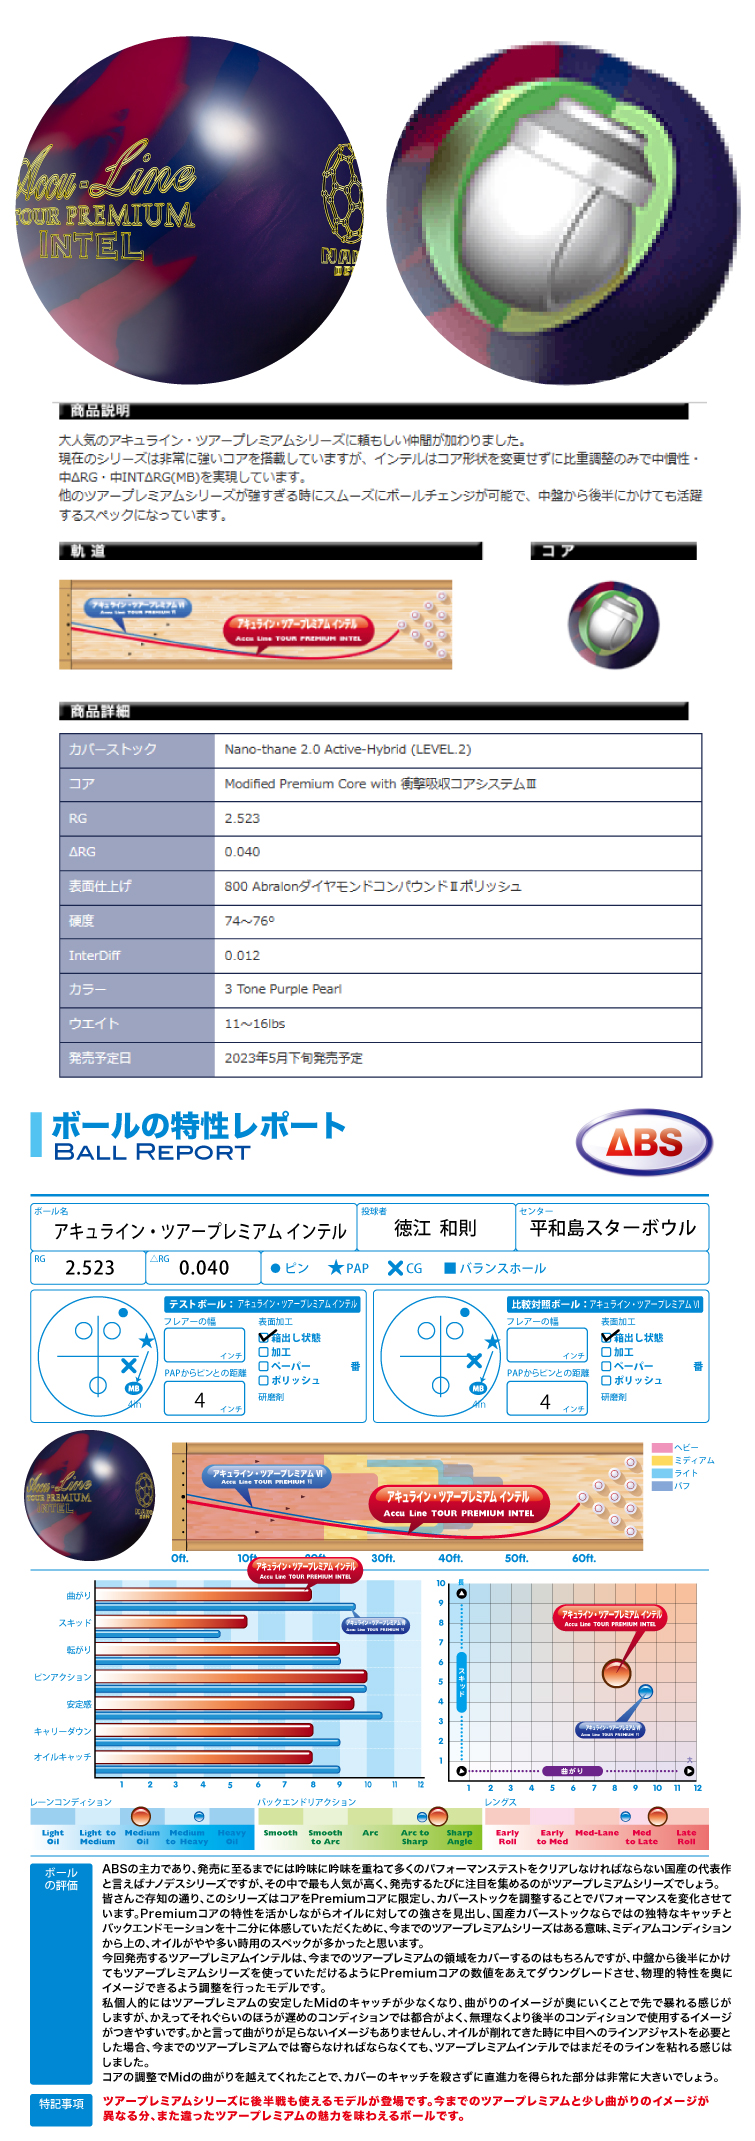 ボウリング用品 ボウリングボール　ABS　ナノデス・アキュラインツアープレミアム インテル　  